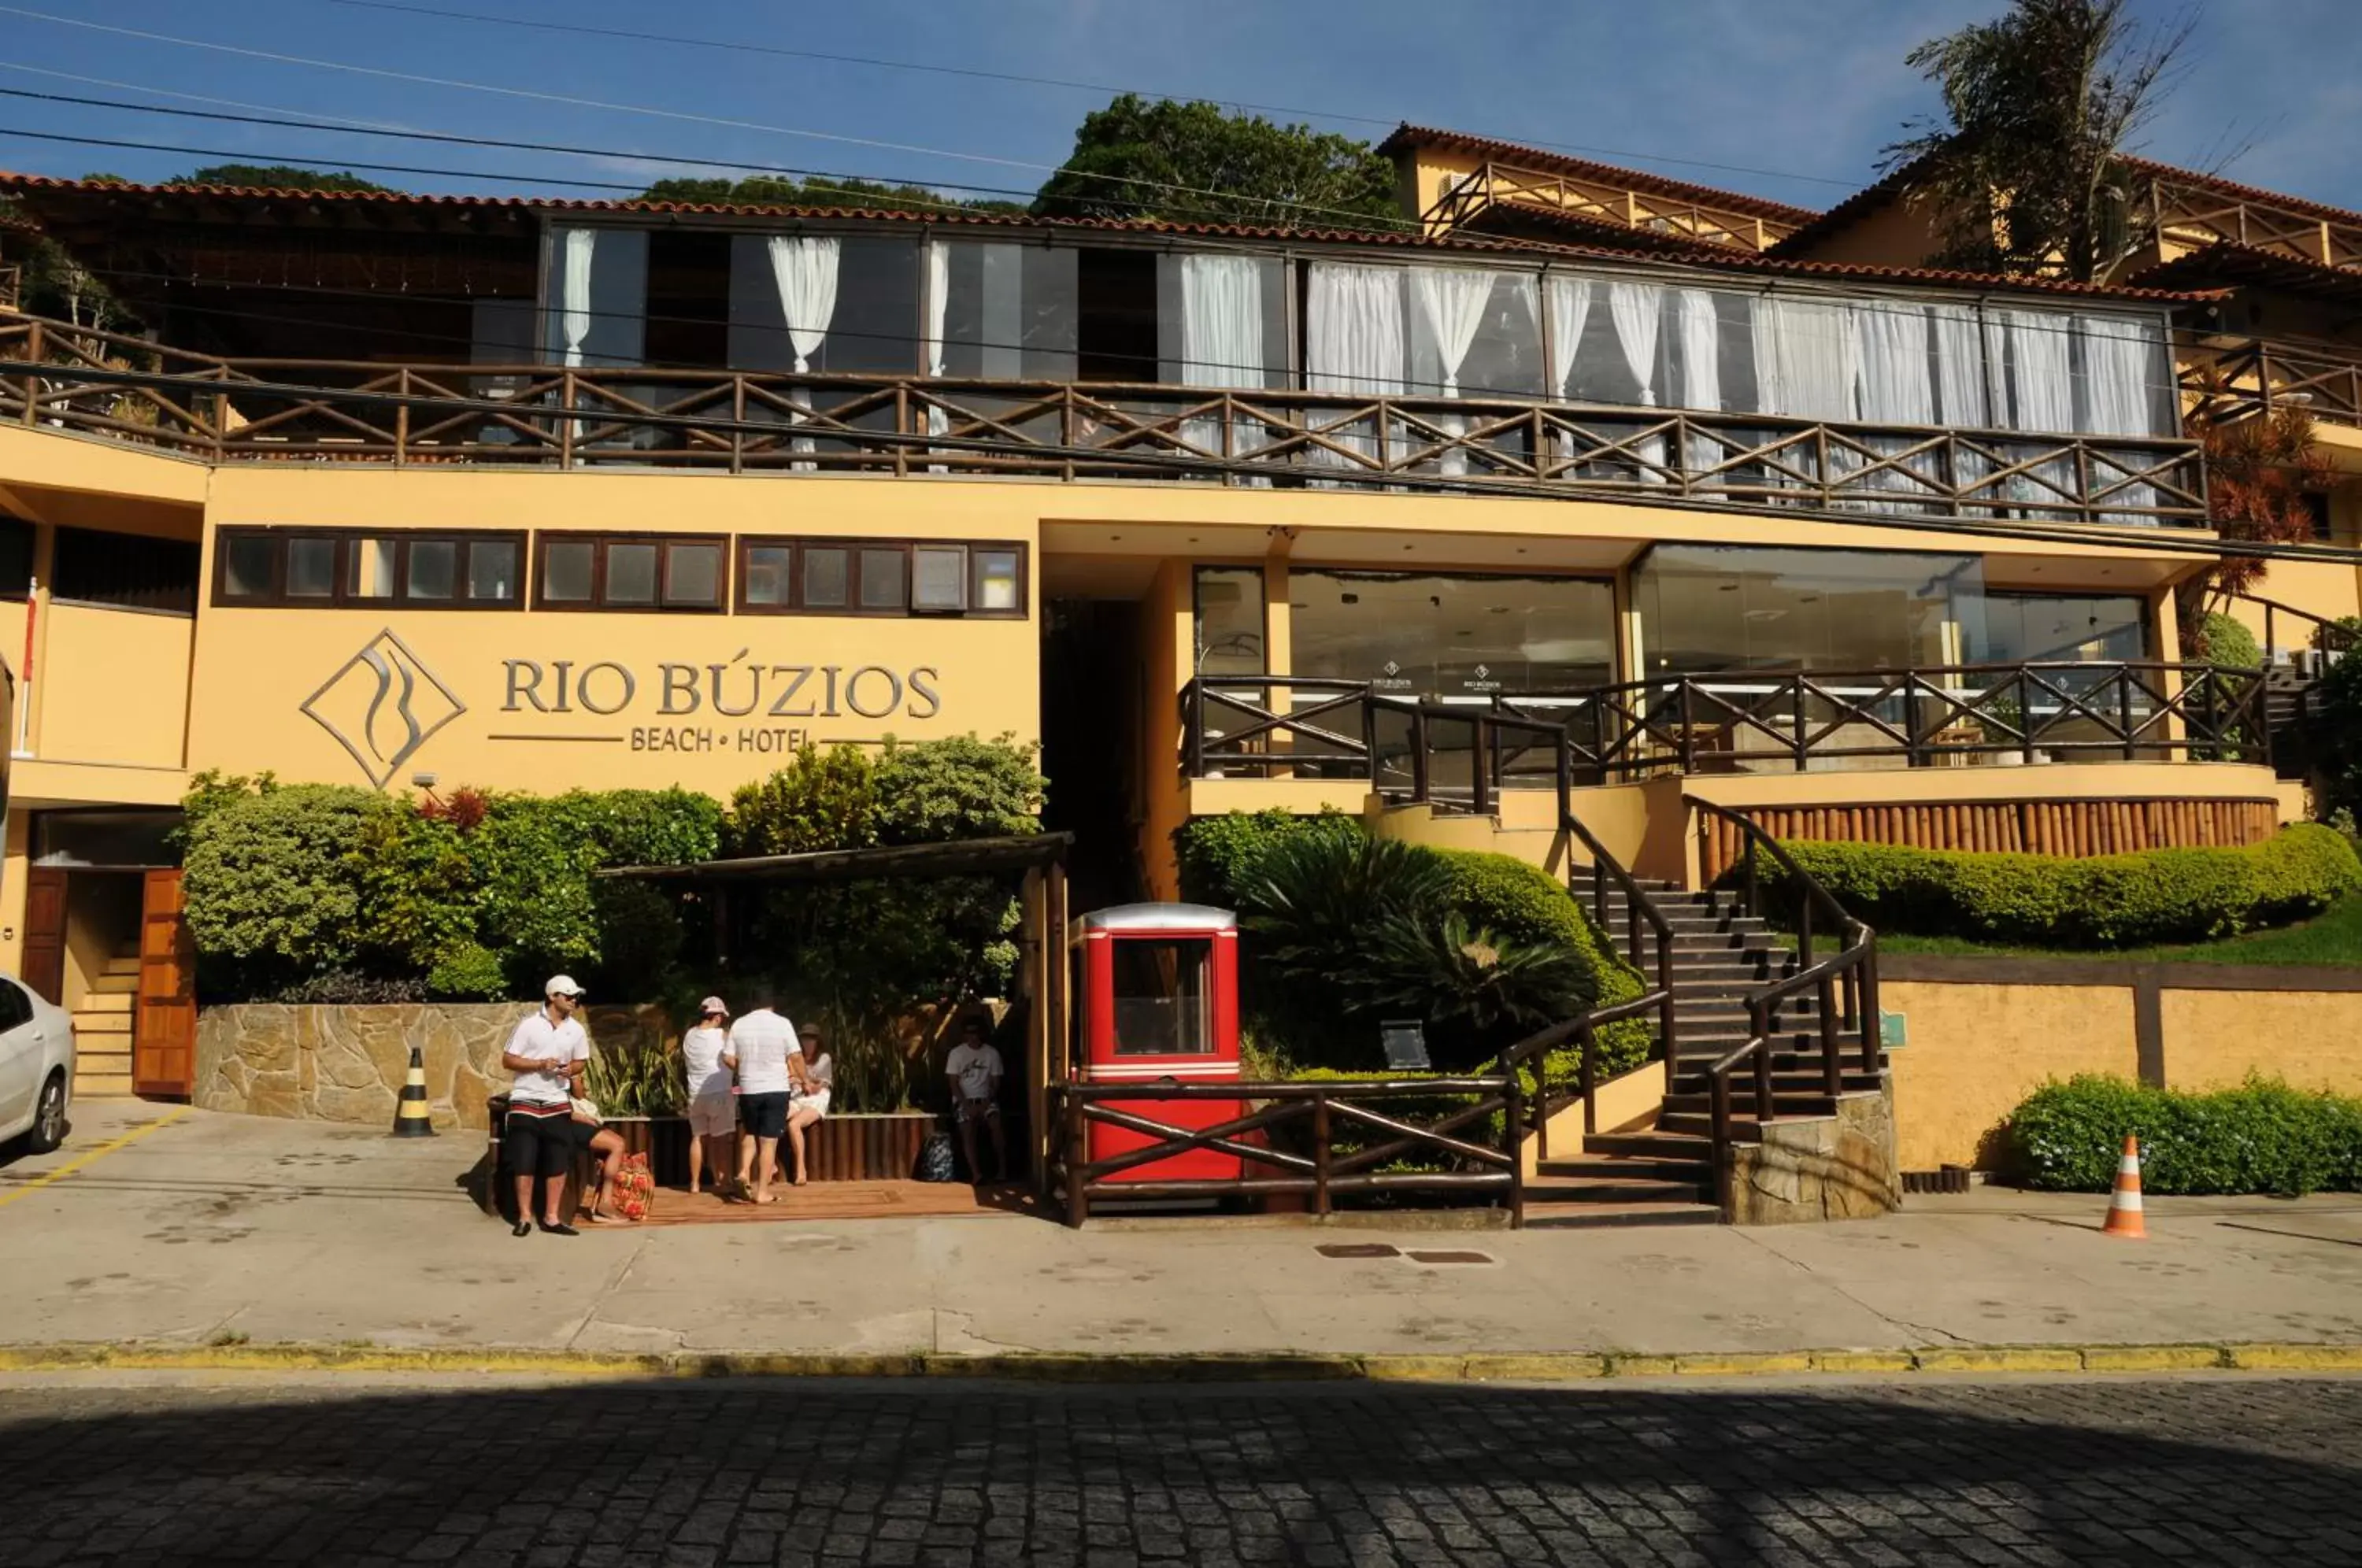 Facade/entrance, Property Building in Rio Búzios Beach Hotel